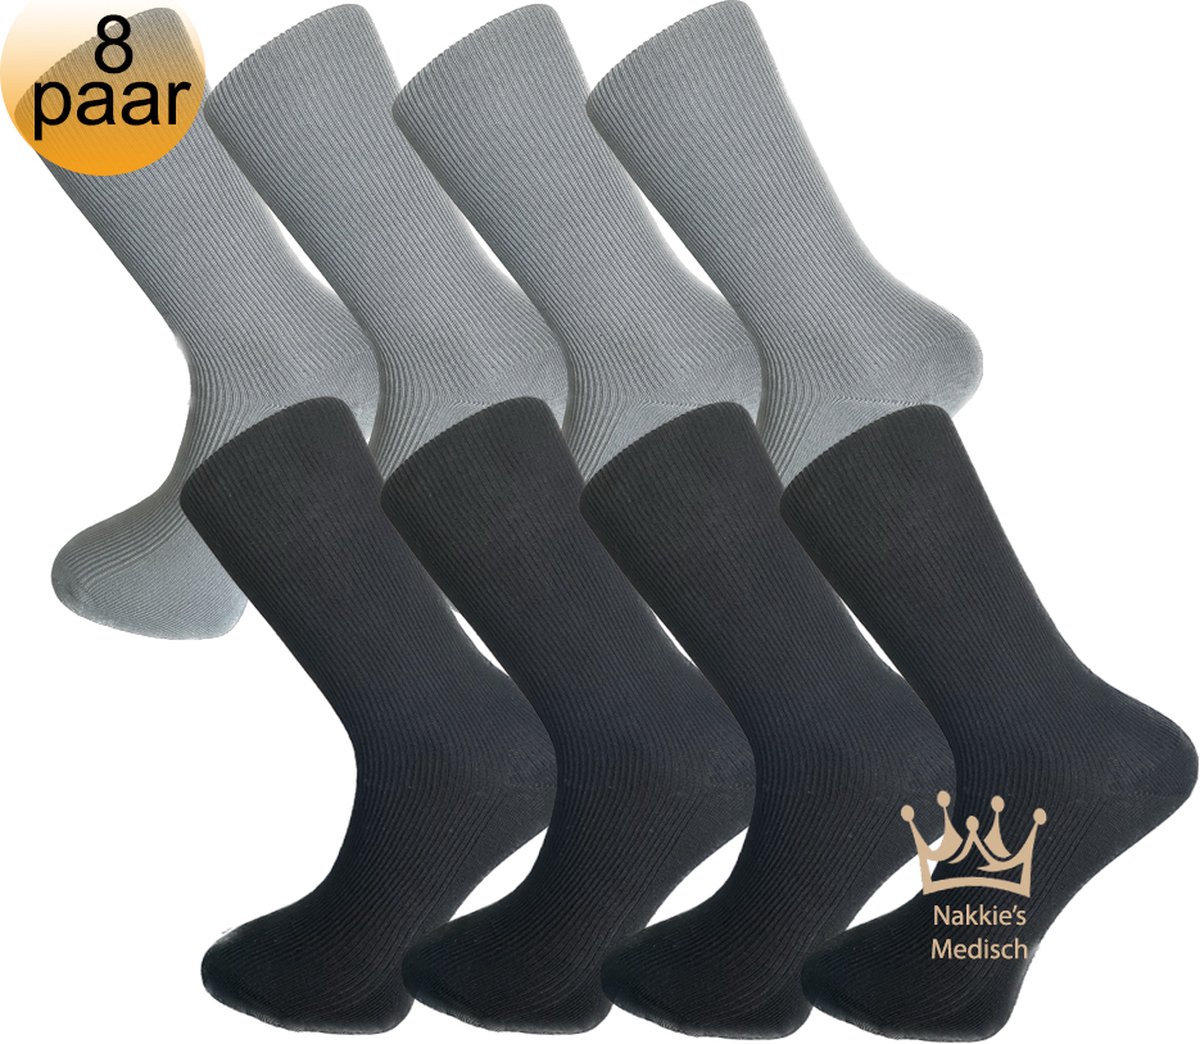 Medische sokken - 100% katoen - 8 paar - Maat 39/42 - Grijs en Zwart